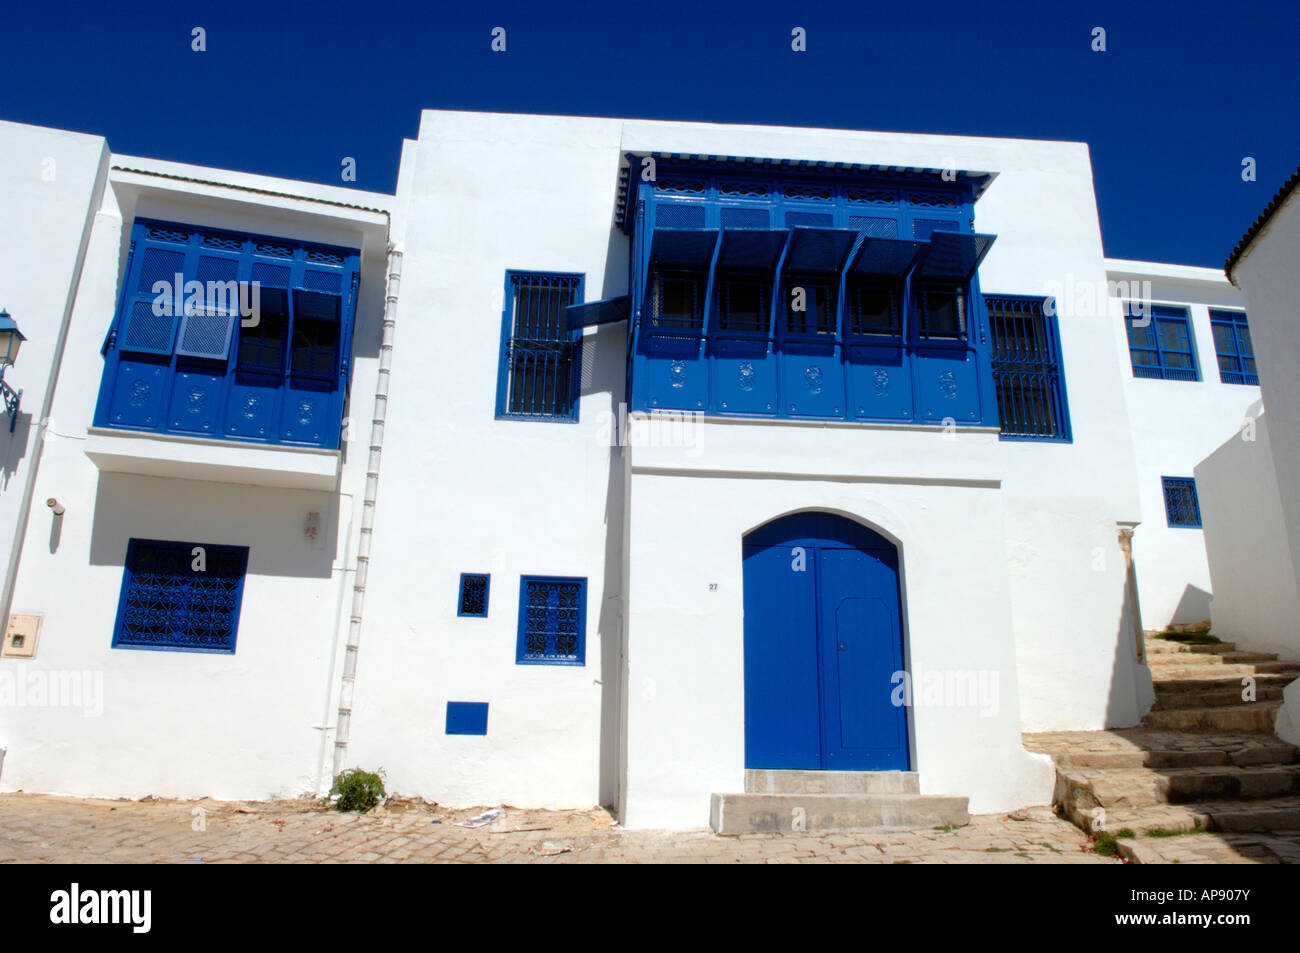 Le ciel bleu profond correspondant à la fenêtre des barbecues très contrastant avec les maisons blanchies à la chaux de Sidi Bou Said Banque D'Images